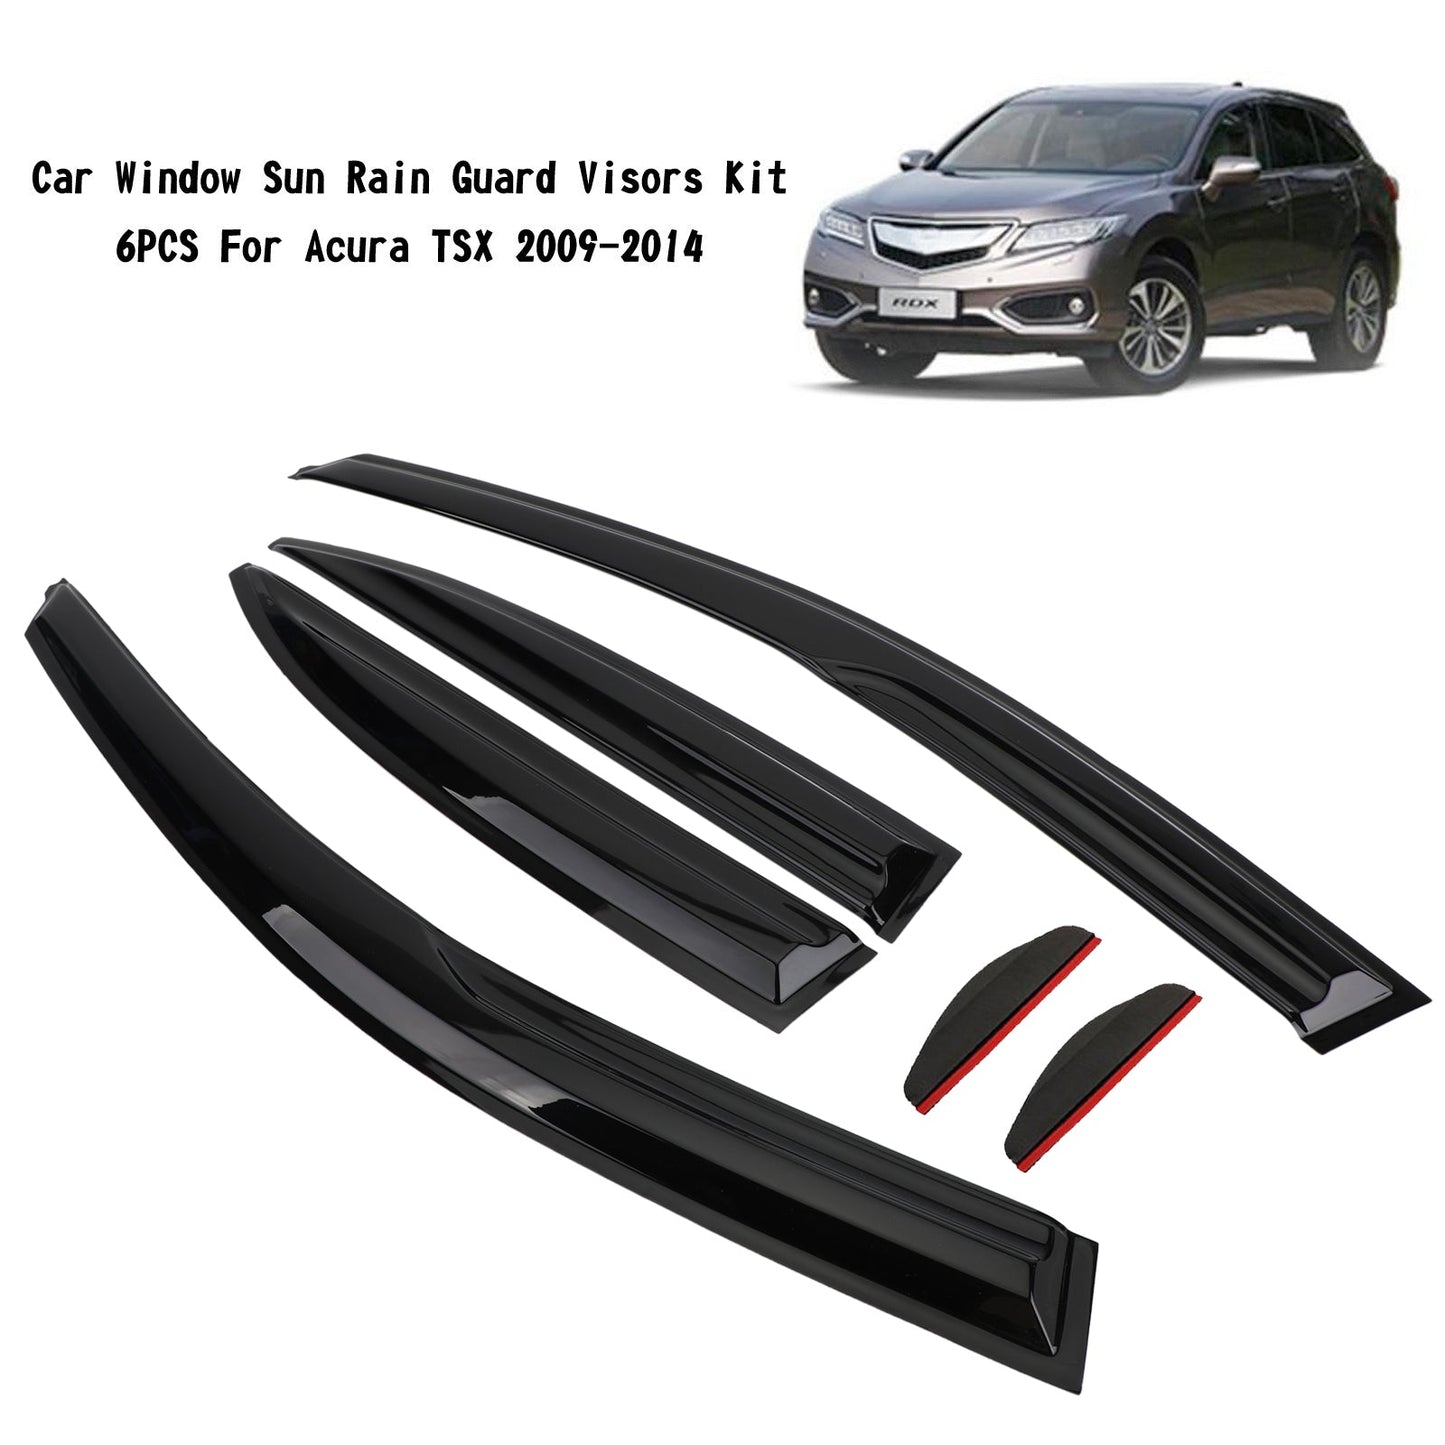 Car Window Sun Rain Guard Visors Kit 6PCS For Acura TSX 2009-2014